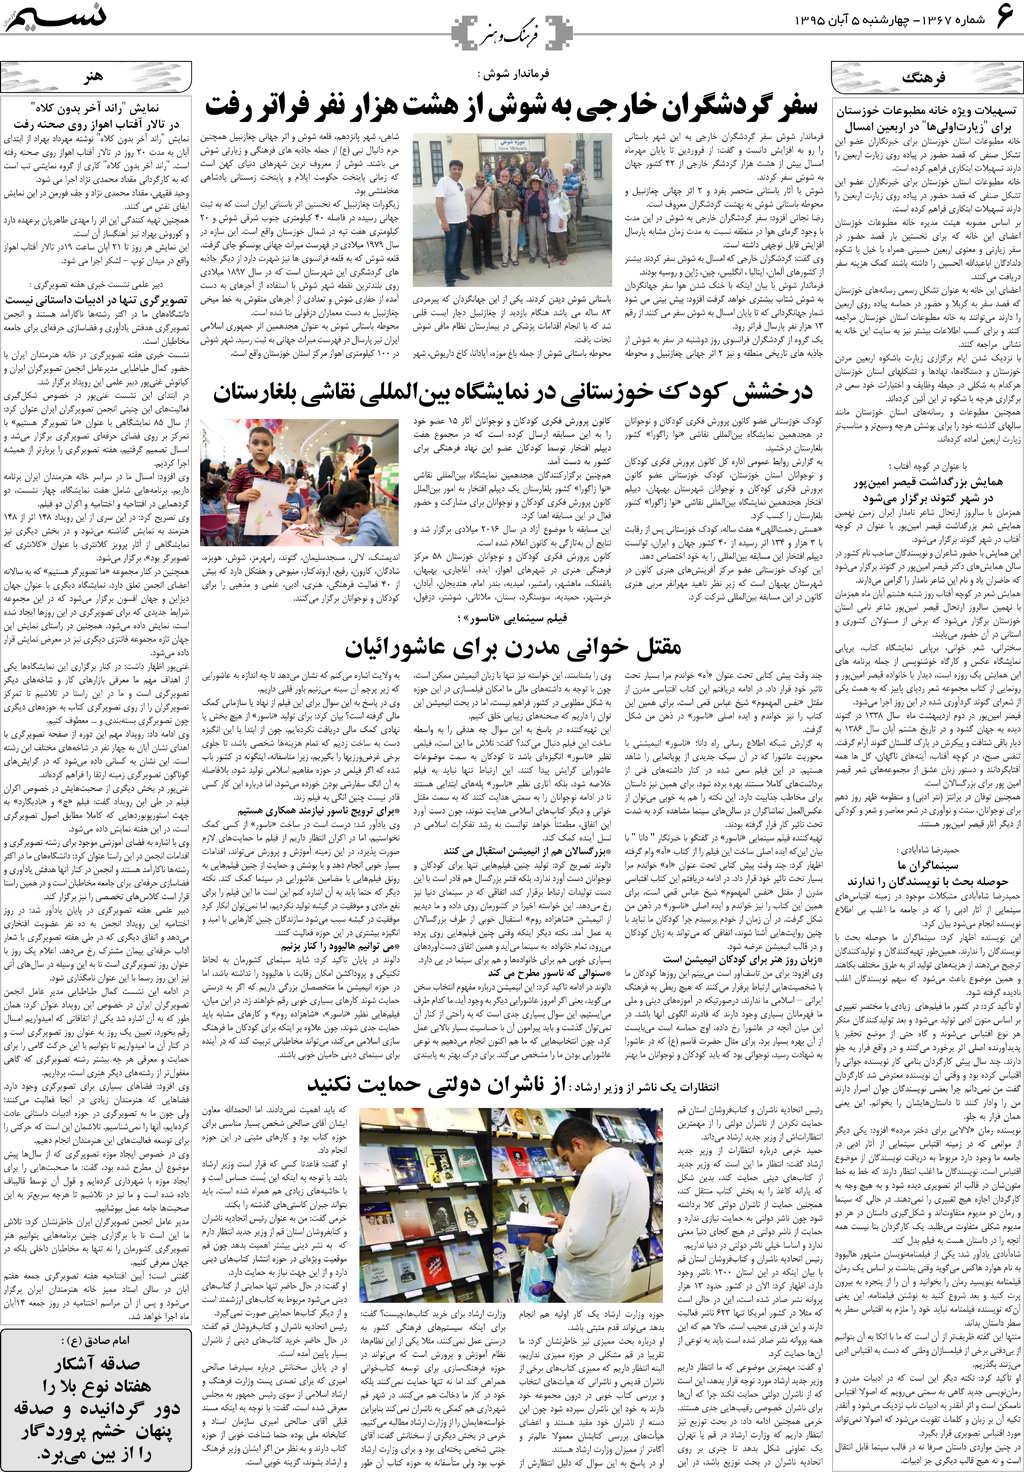 صفحه فرهنگ و هنر روزنامه نسیم شماره 1367